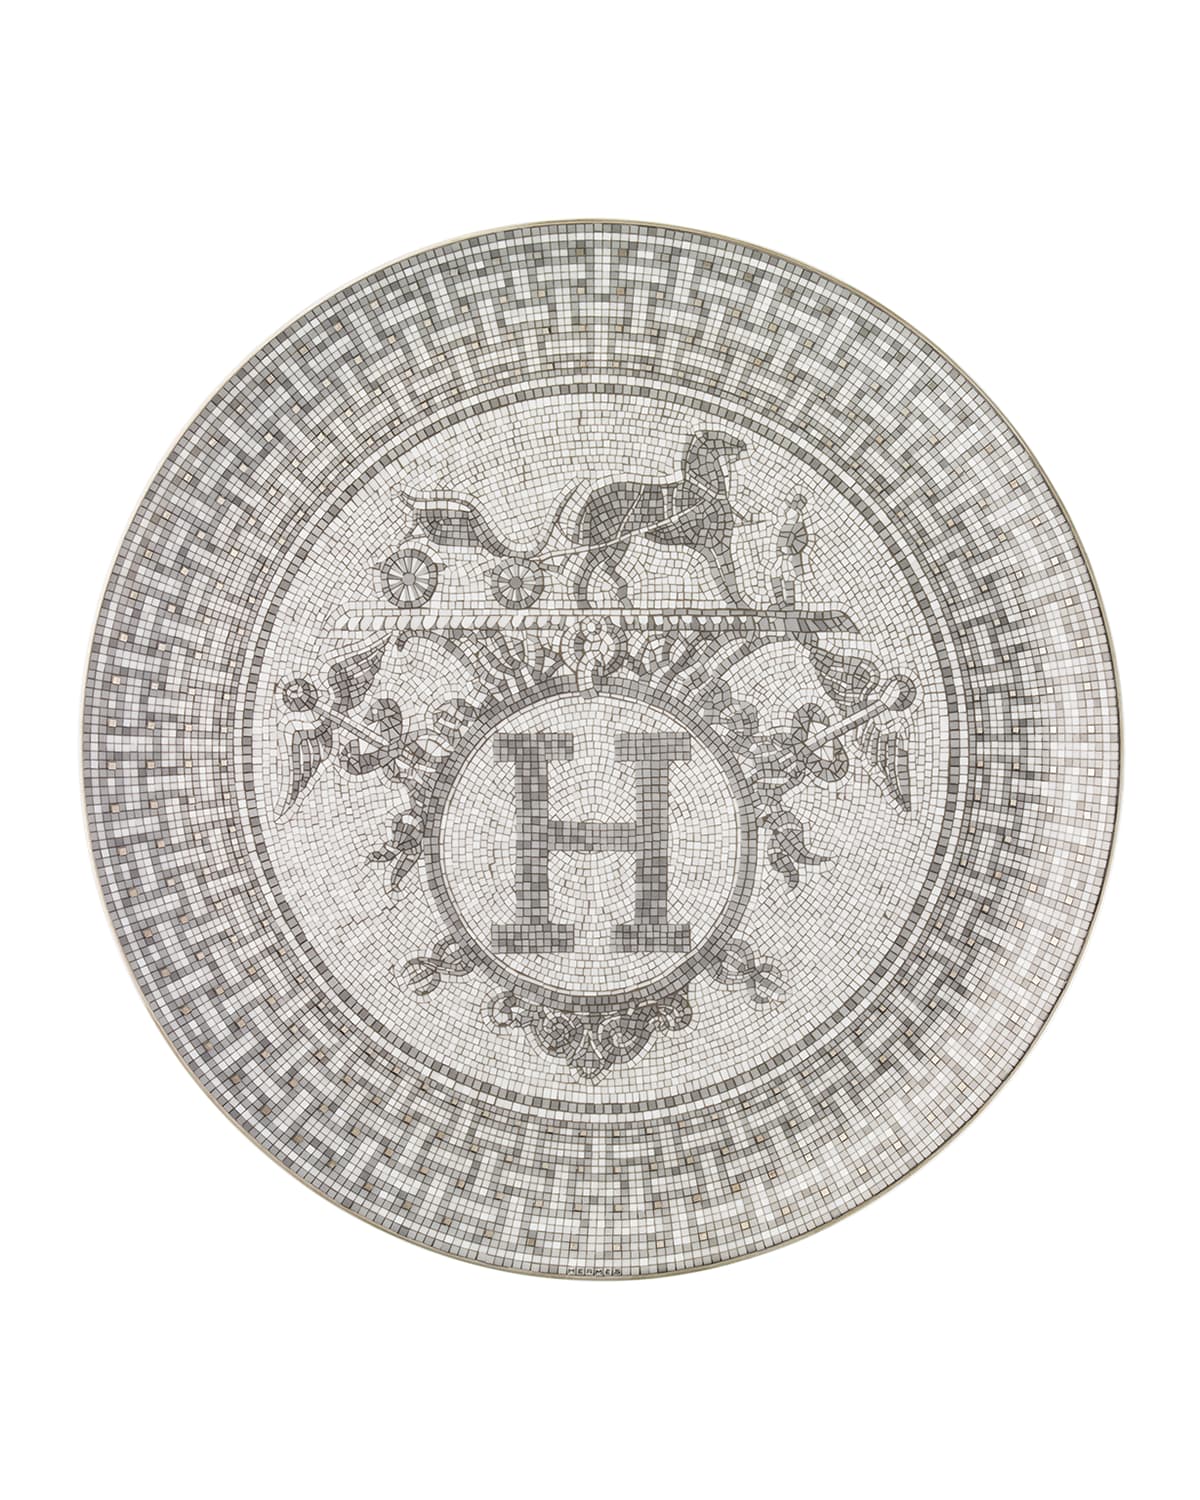 Hermès Mosaique au 24 Platinum Tart Platter